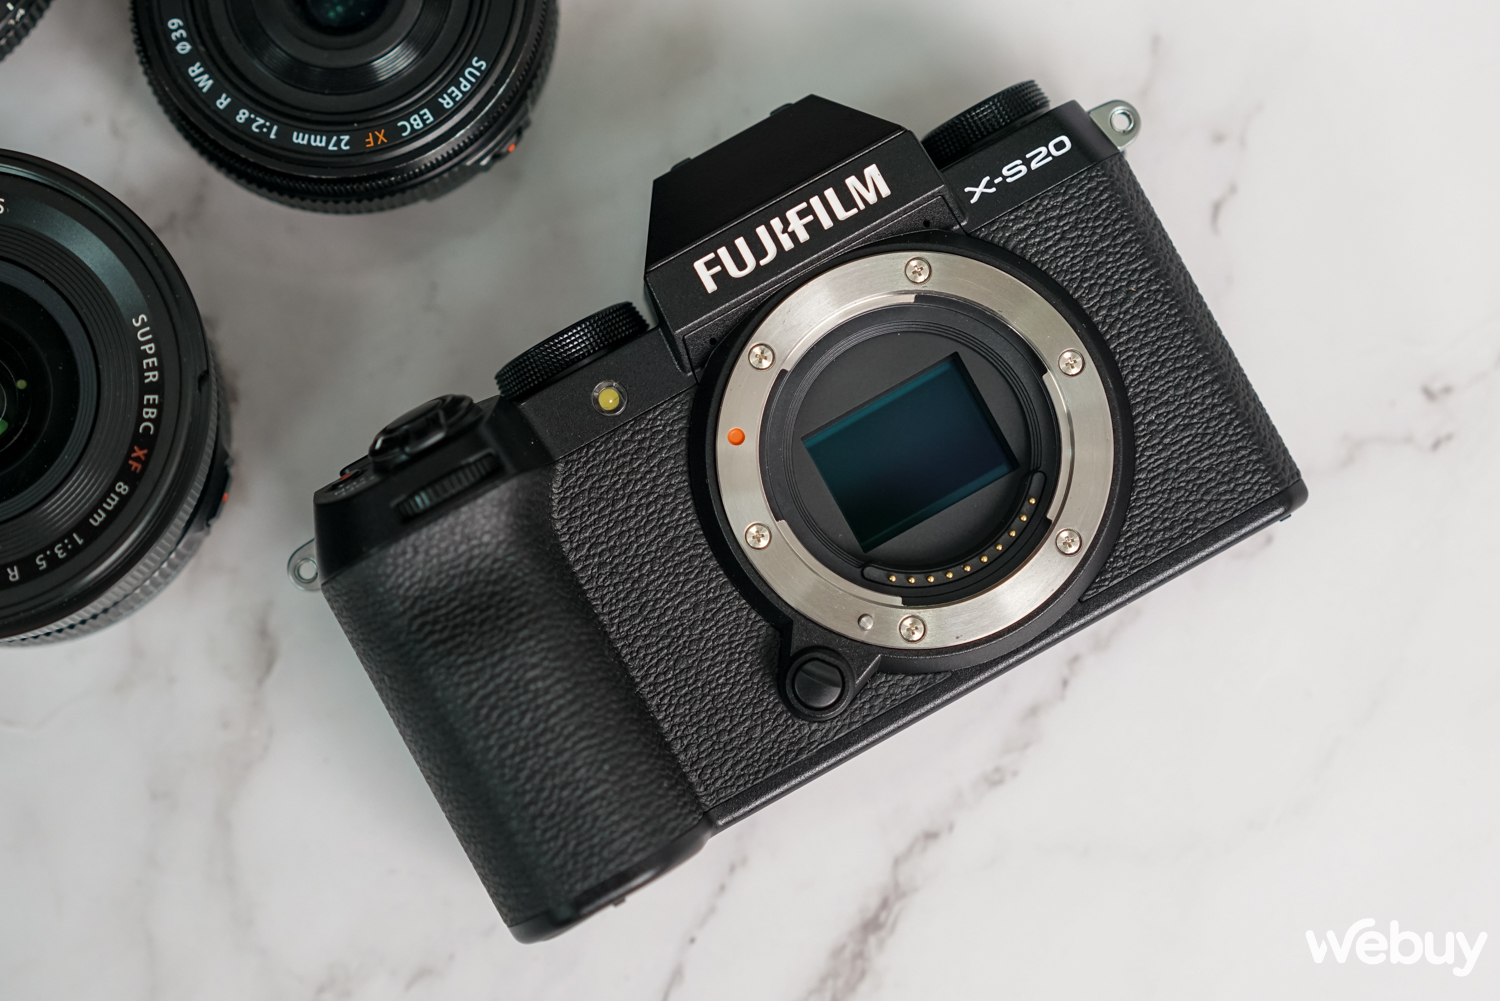 Ra đường chụp ảnh với Fujifilm X-S20: Không còn là dòng máy 'nhập môn' - Ảnh 16.